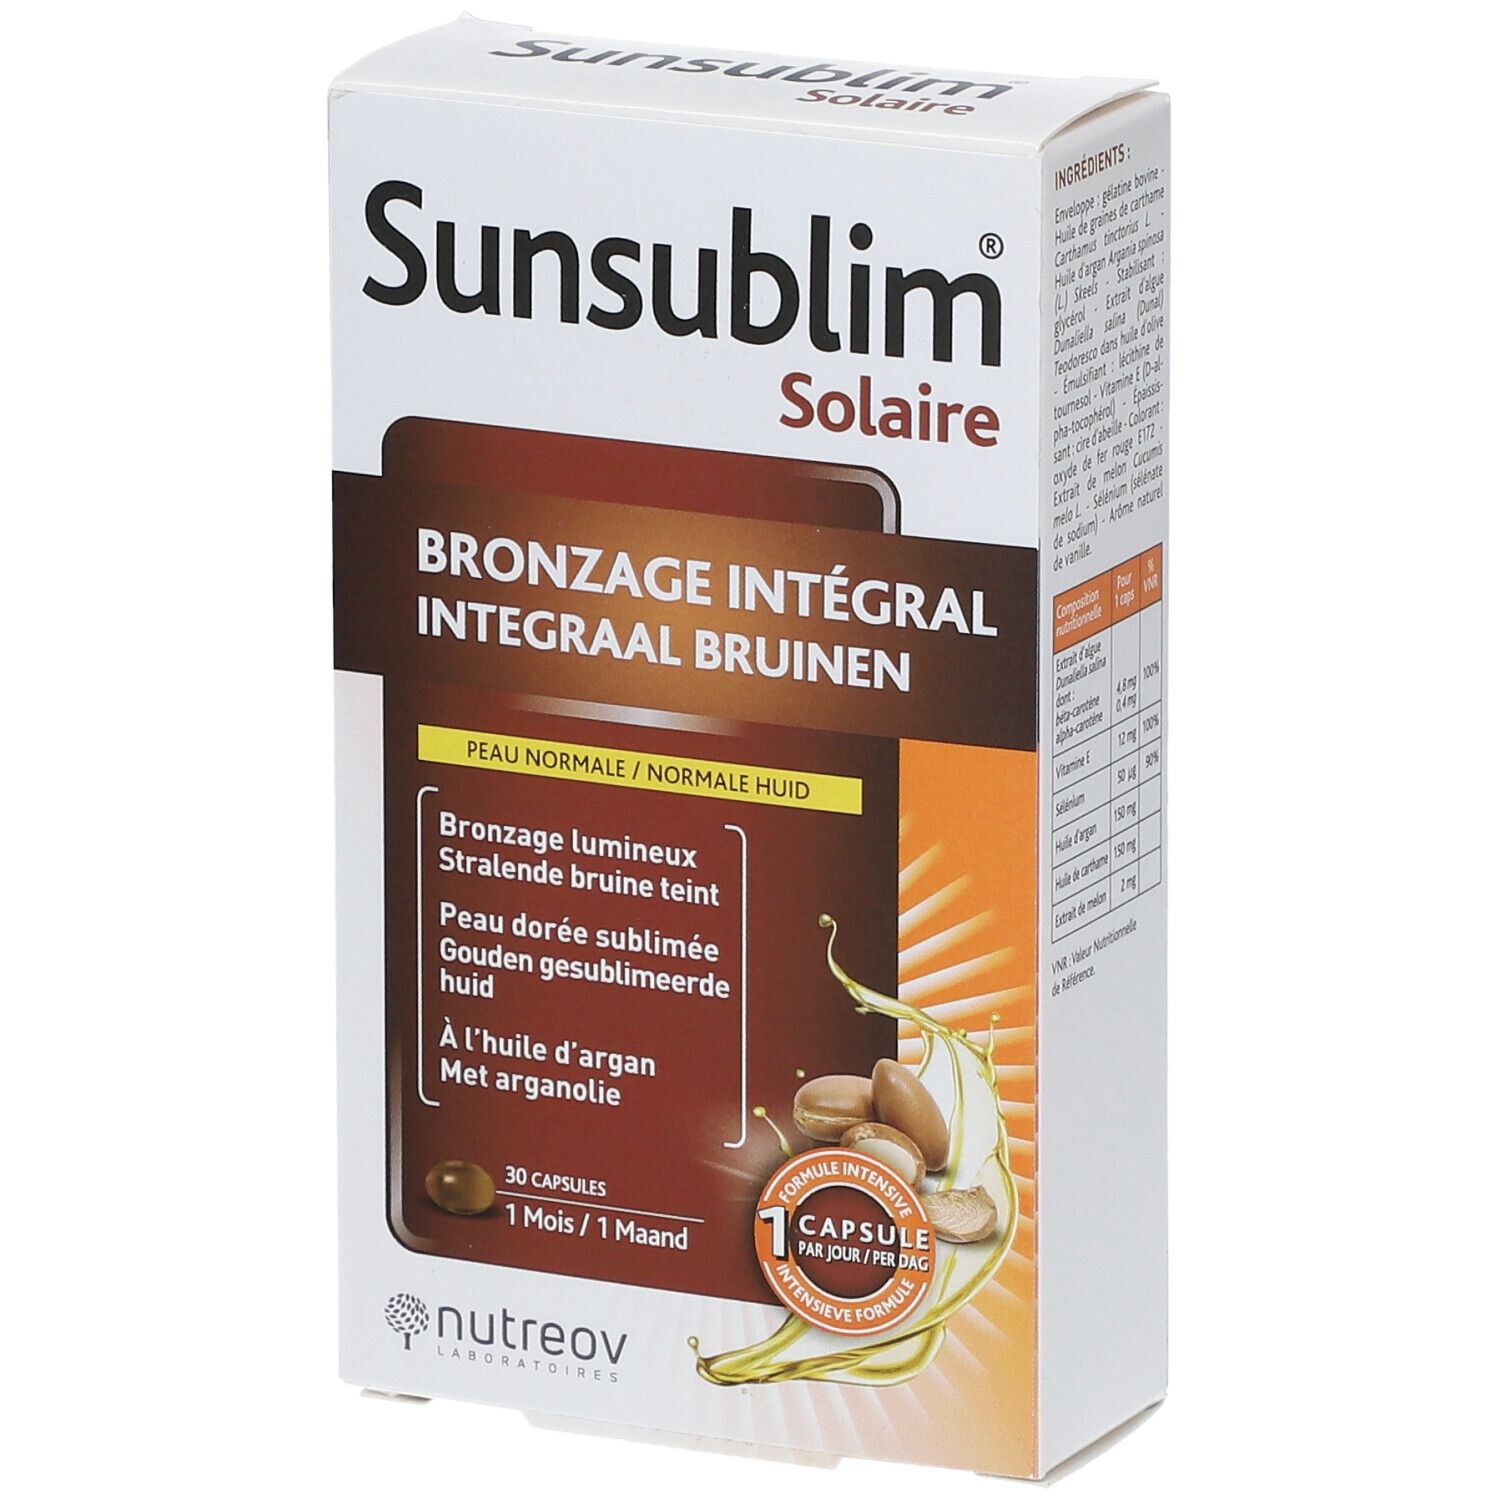 Image of nutreov Sunsublim® Bronzage Integral